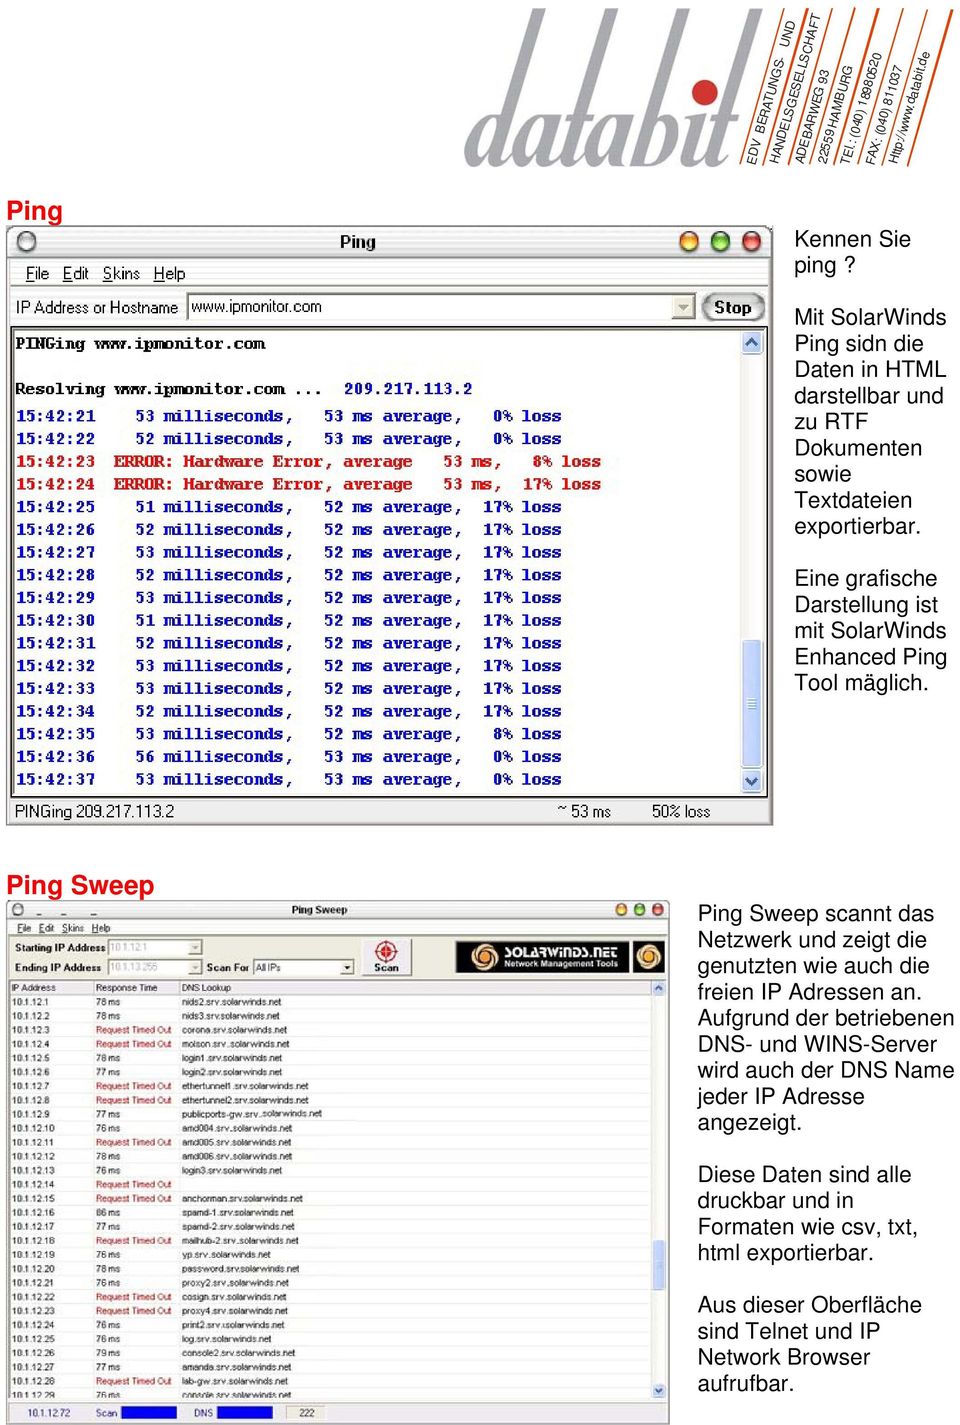 Ping Sweep Ping Sweep scannt das Netzwerk und zeigt die genutzten wie auch die freien IP Adressen an.